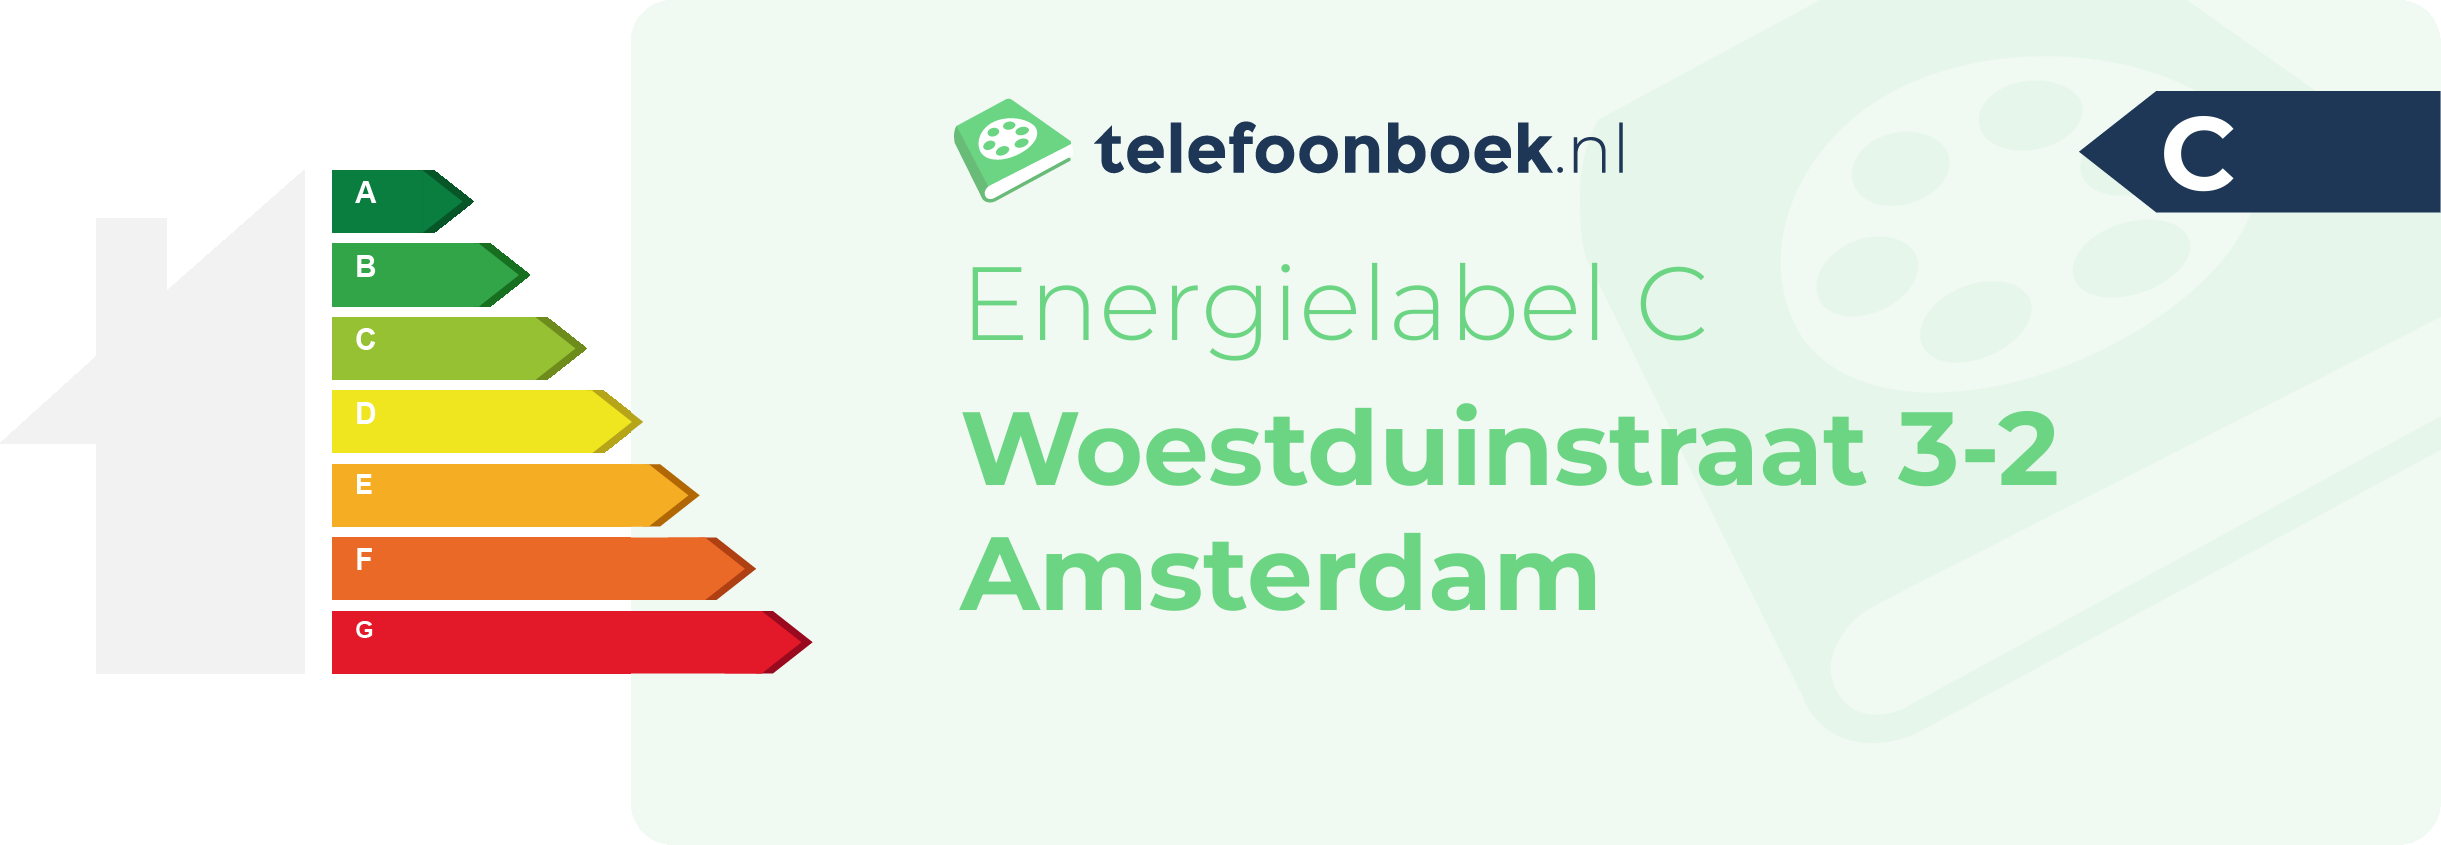 Energielabel Woestduinstraat 3-2 Amsterdam